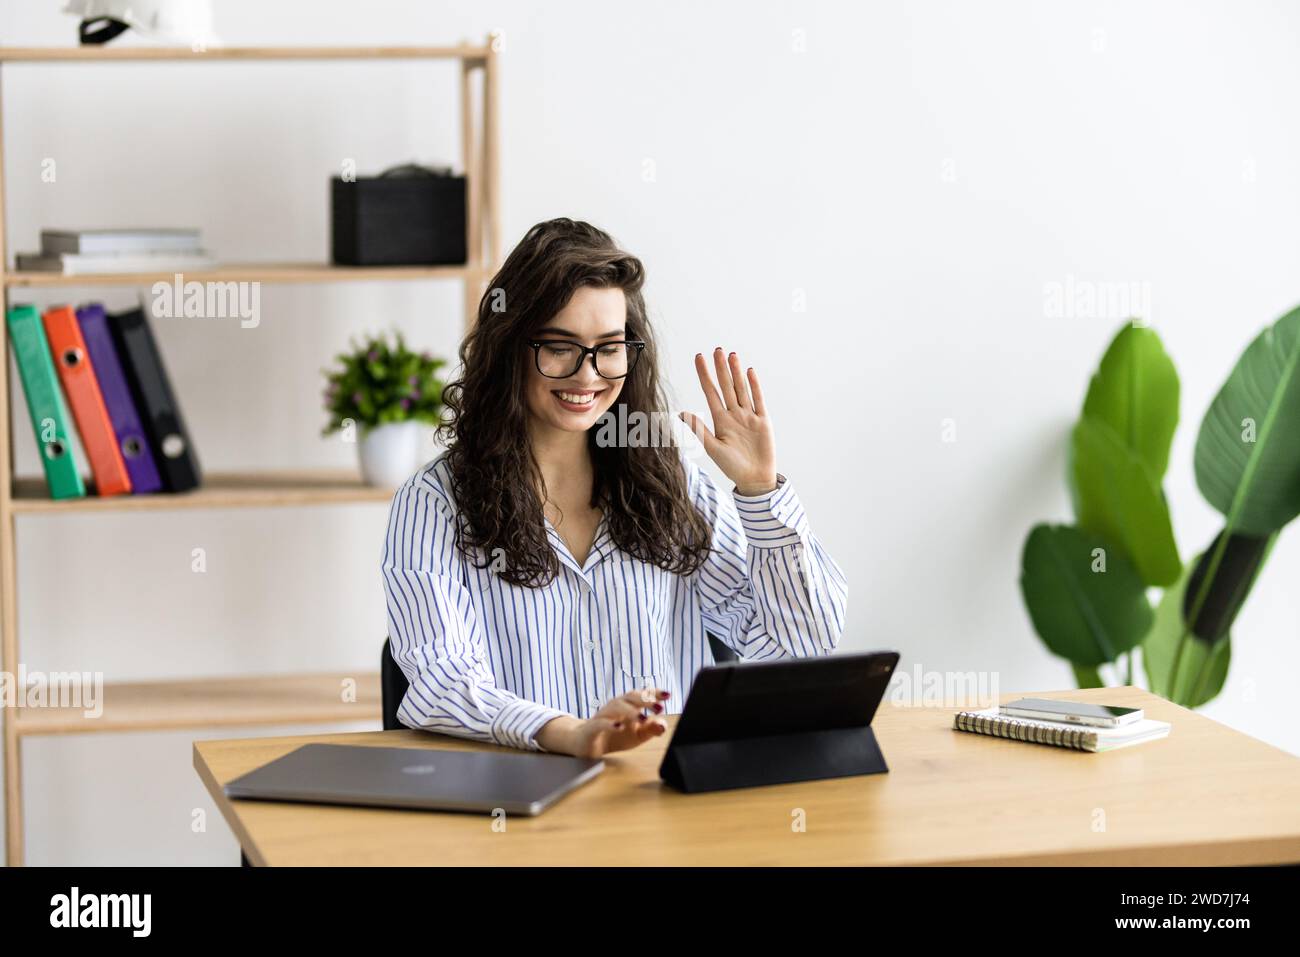 Professionnels office worker waving dans une vidéo conférence avec une tablette sur un bureau Banque D'Images